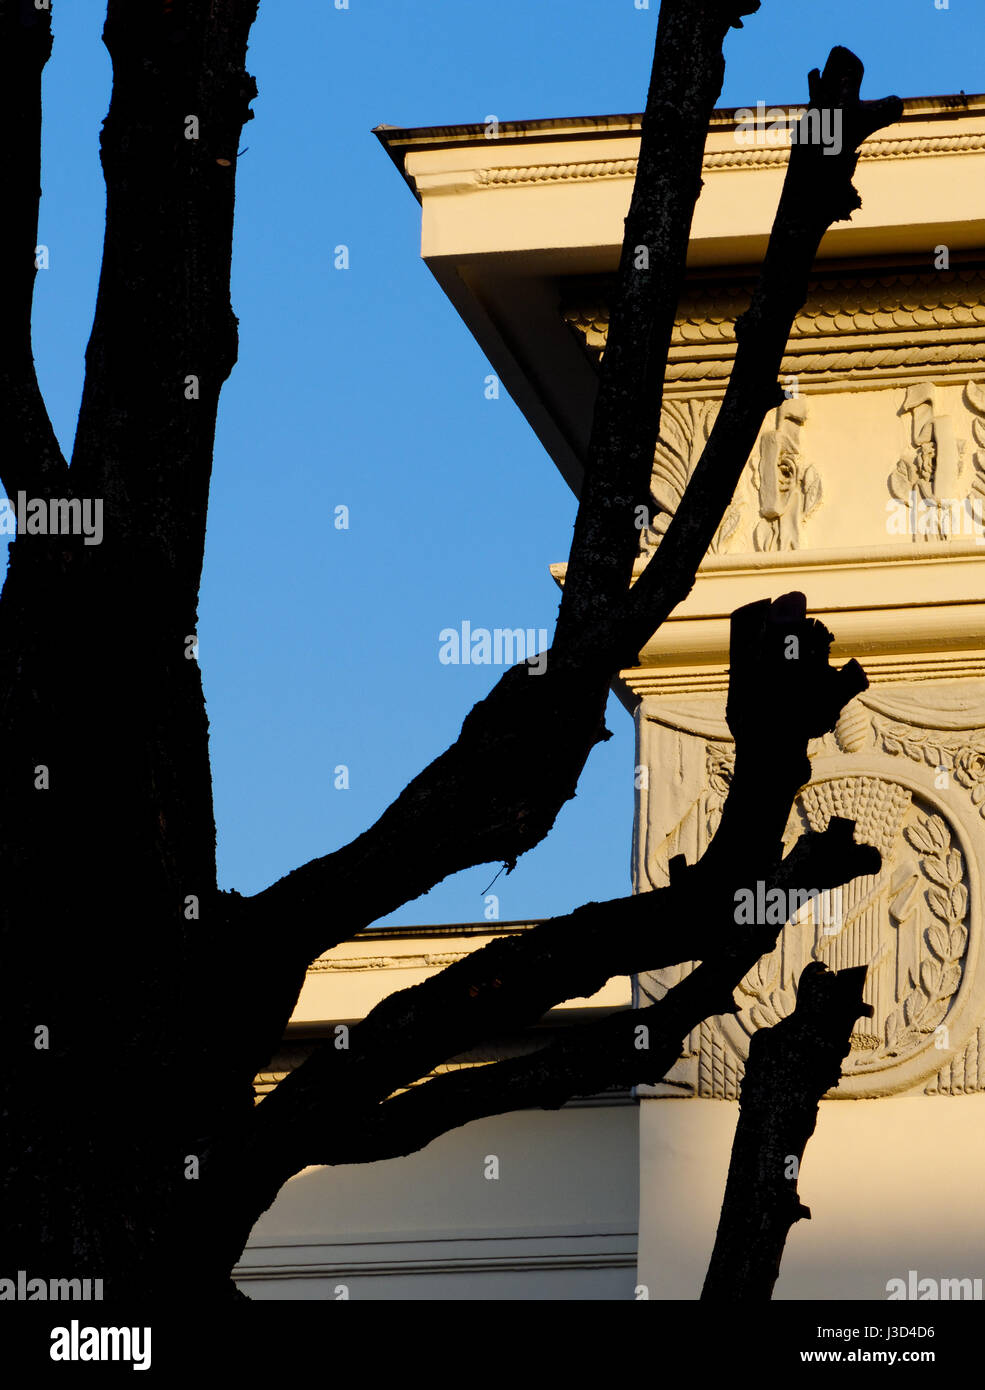 Gli sfondi e texture: albero nero silhouette, parte dell'edificio esterno e cielo blu chiaro a sfondo Foto Stock